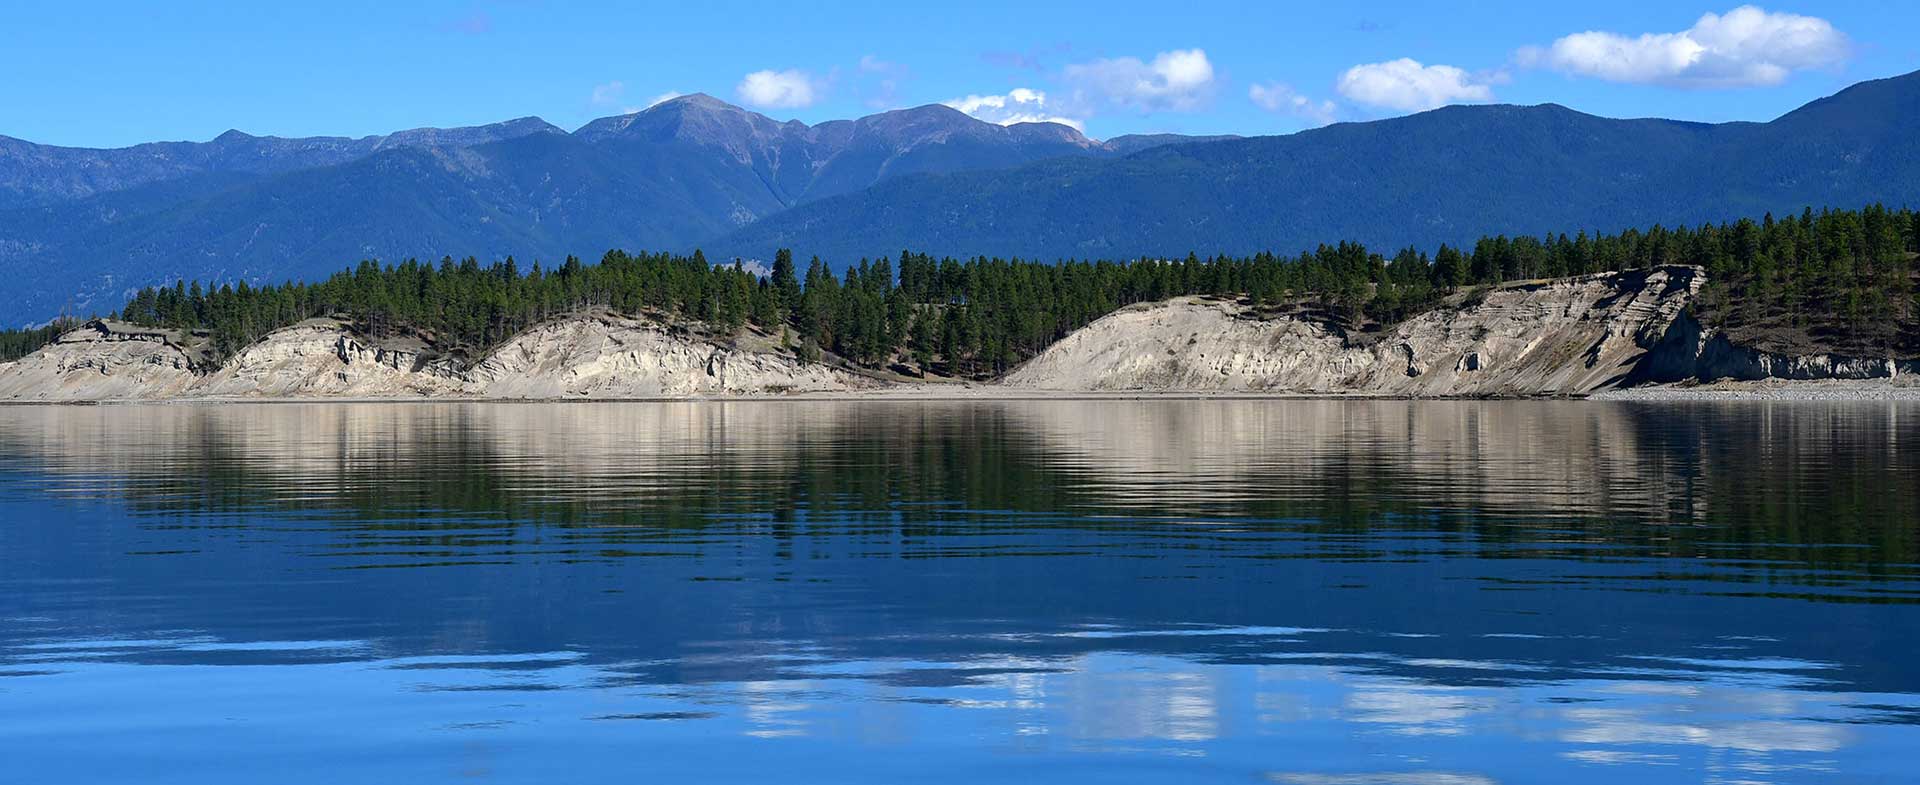 Lake view of Lake Koocanusa in Eureka Montana